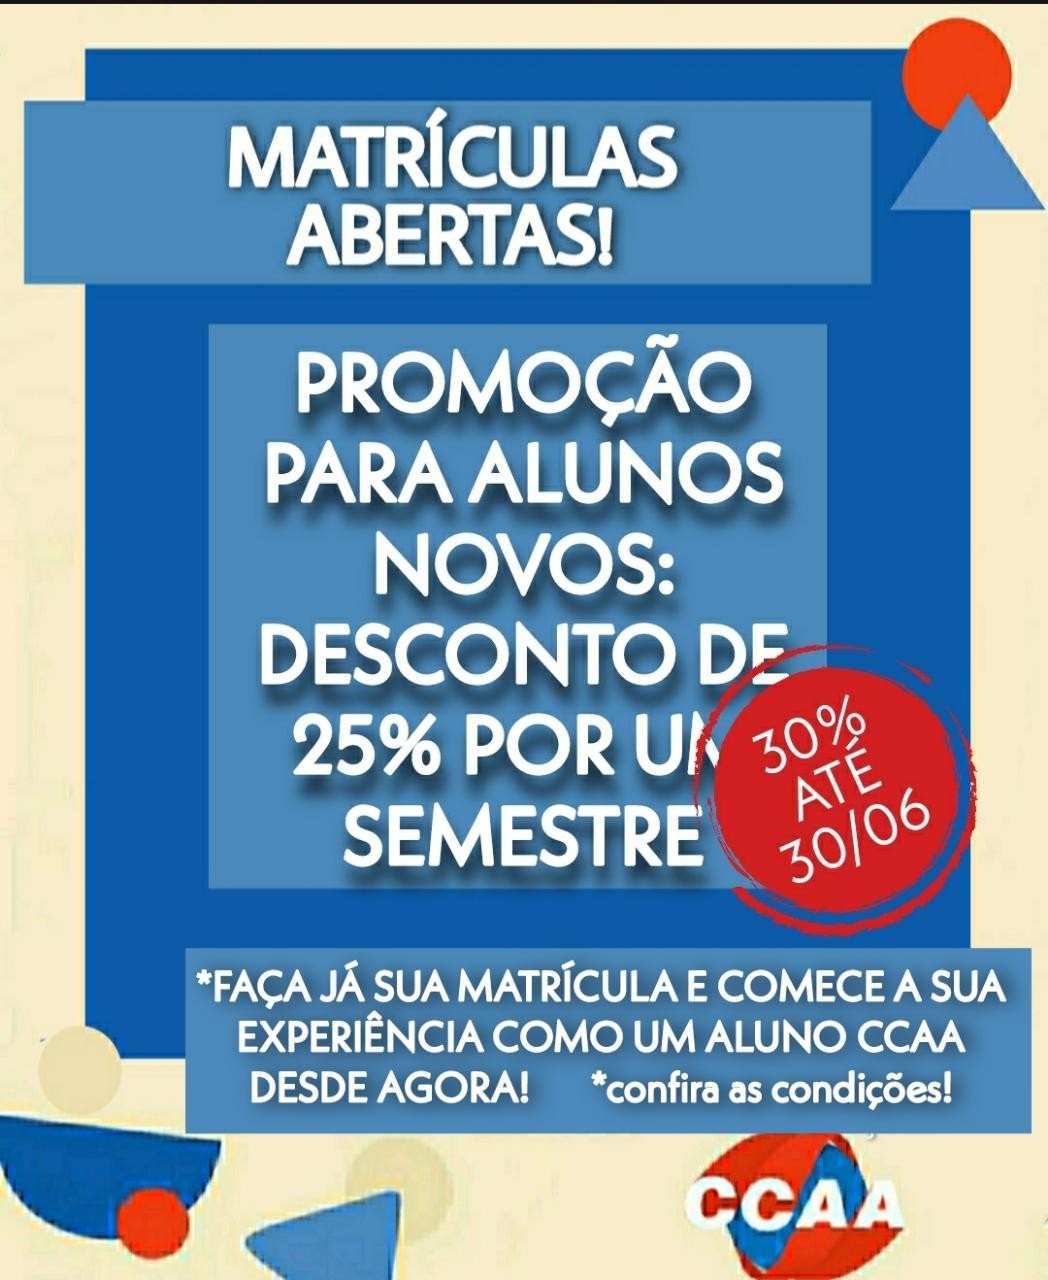 MATRÍCULAS ABERTAS PROMOÇÃO 30%